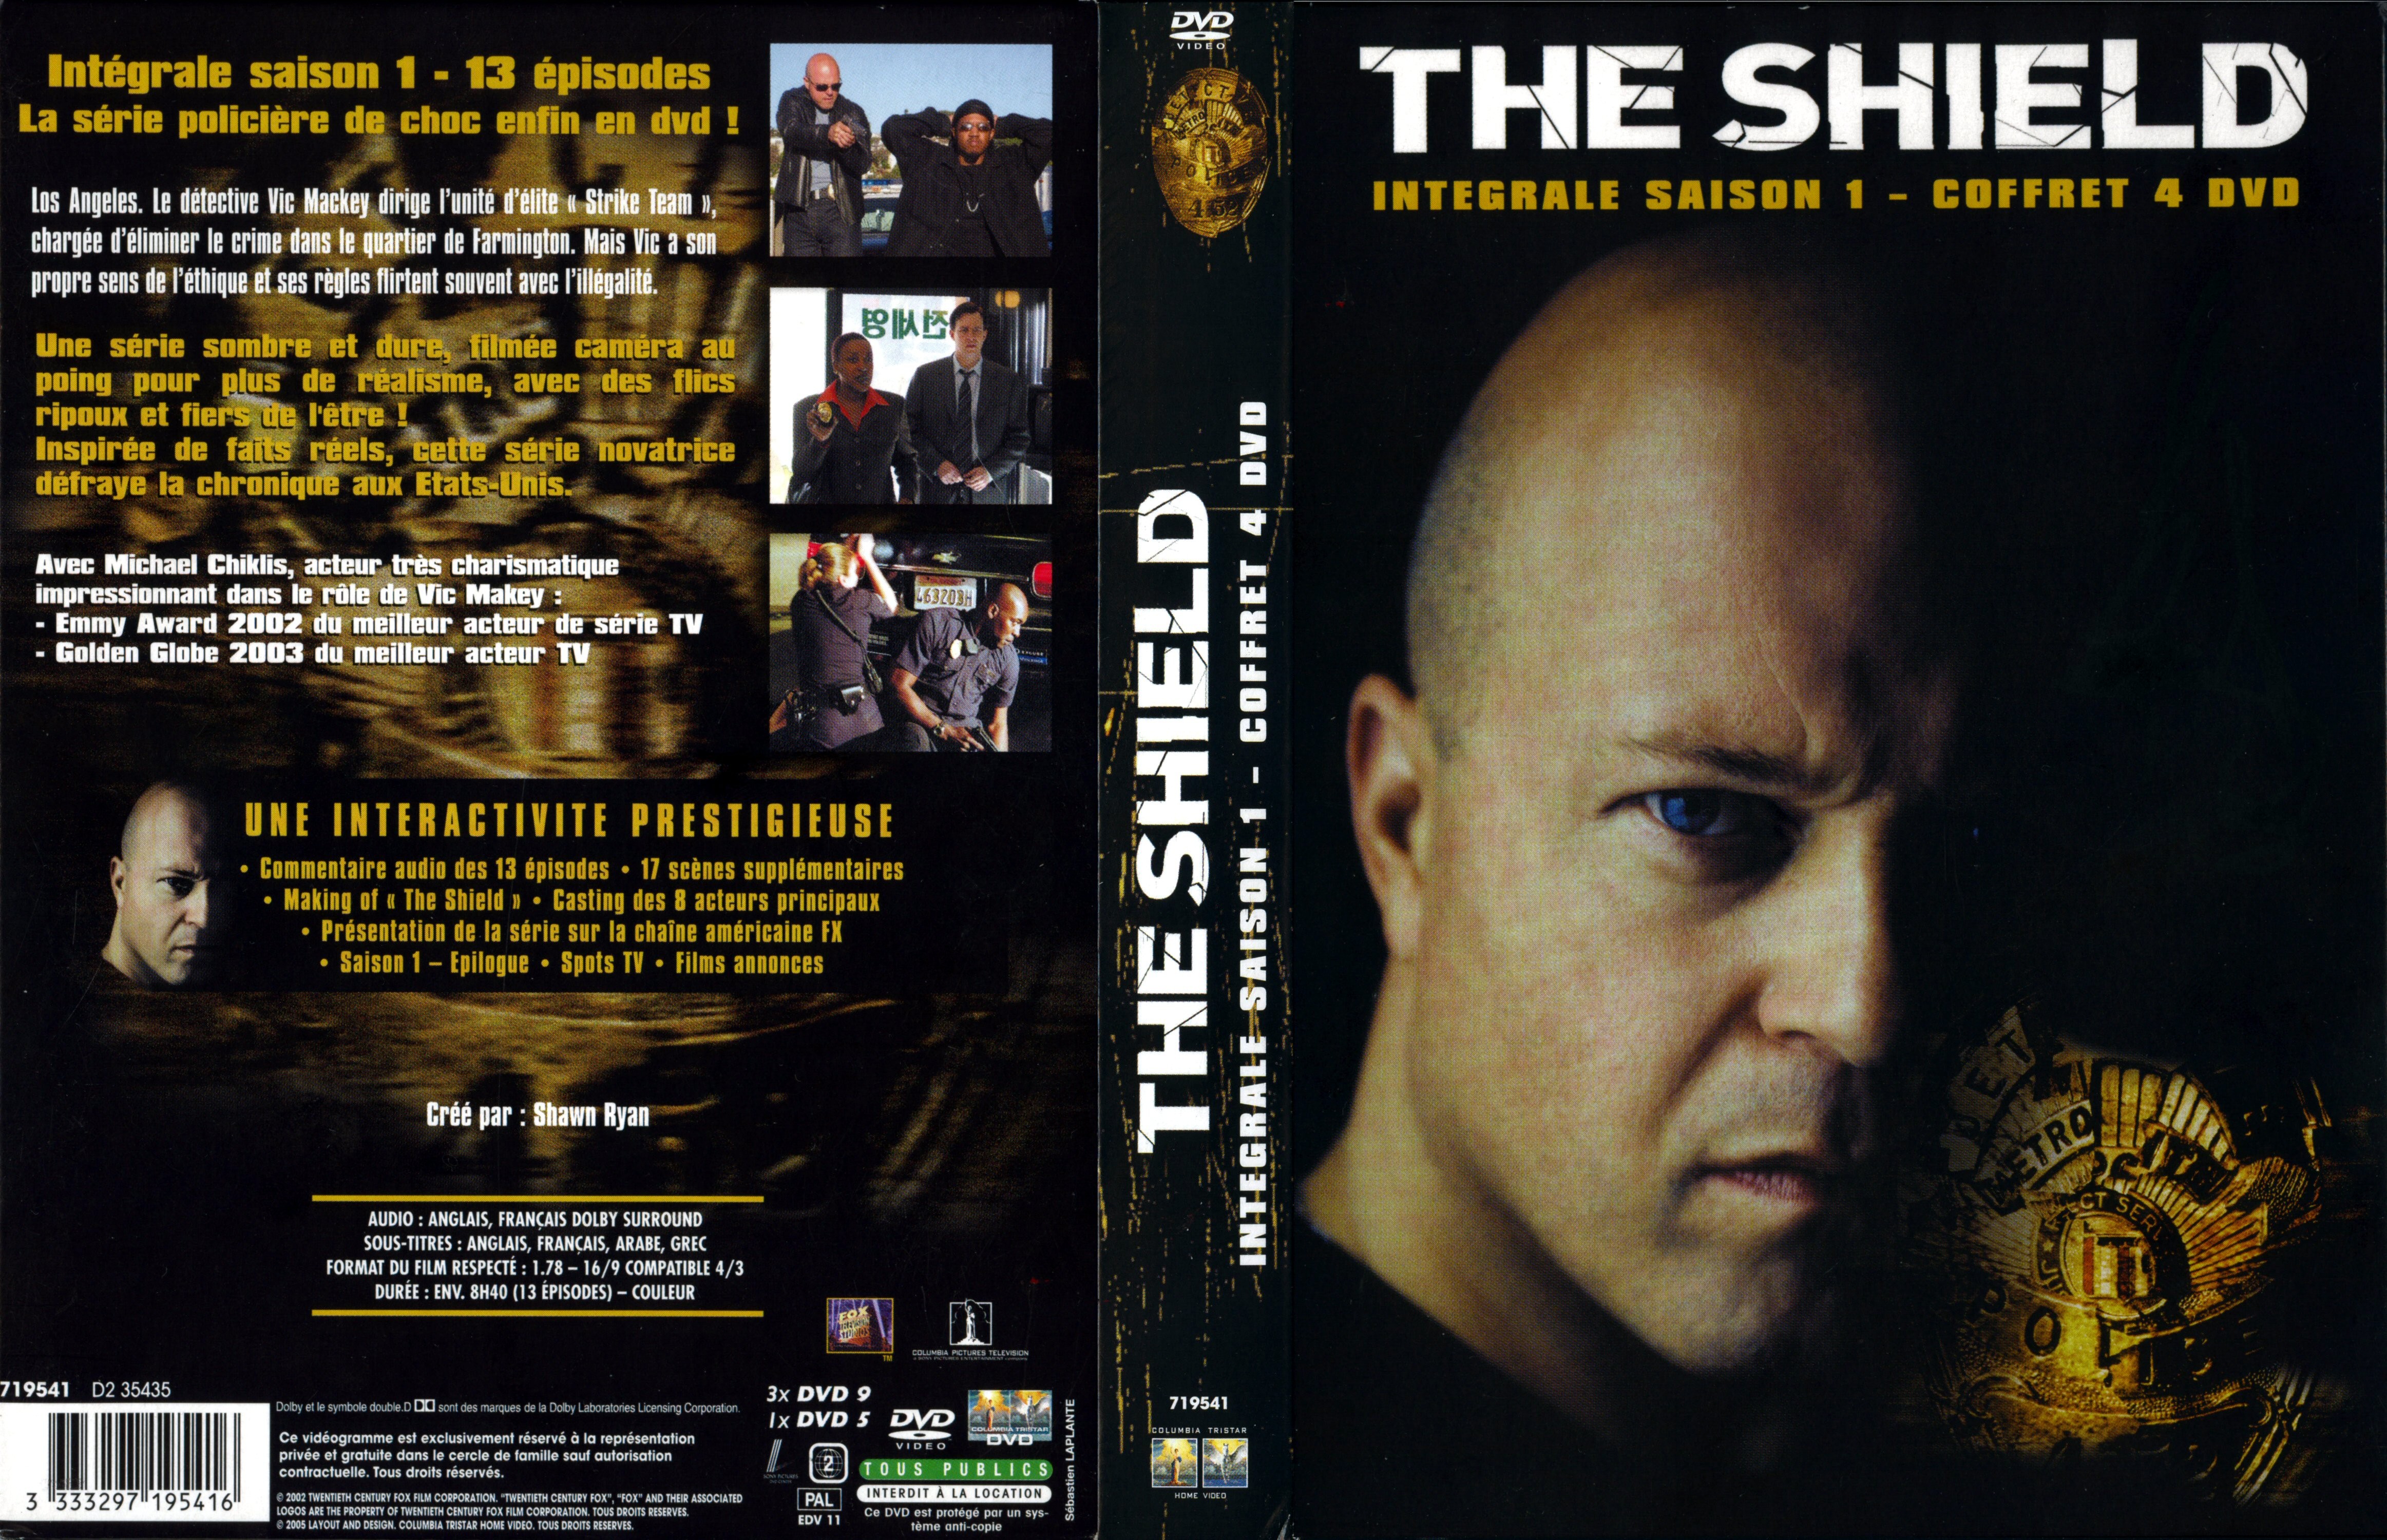 Jaquette DVD The shield Saison 1 COFFRET